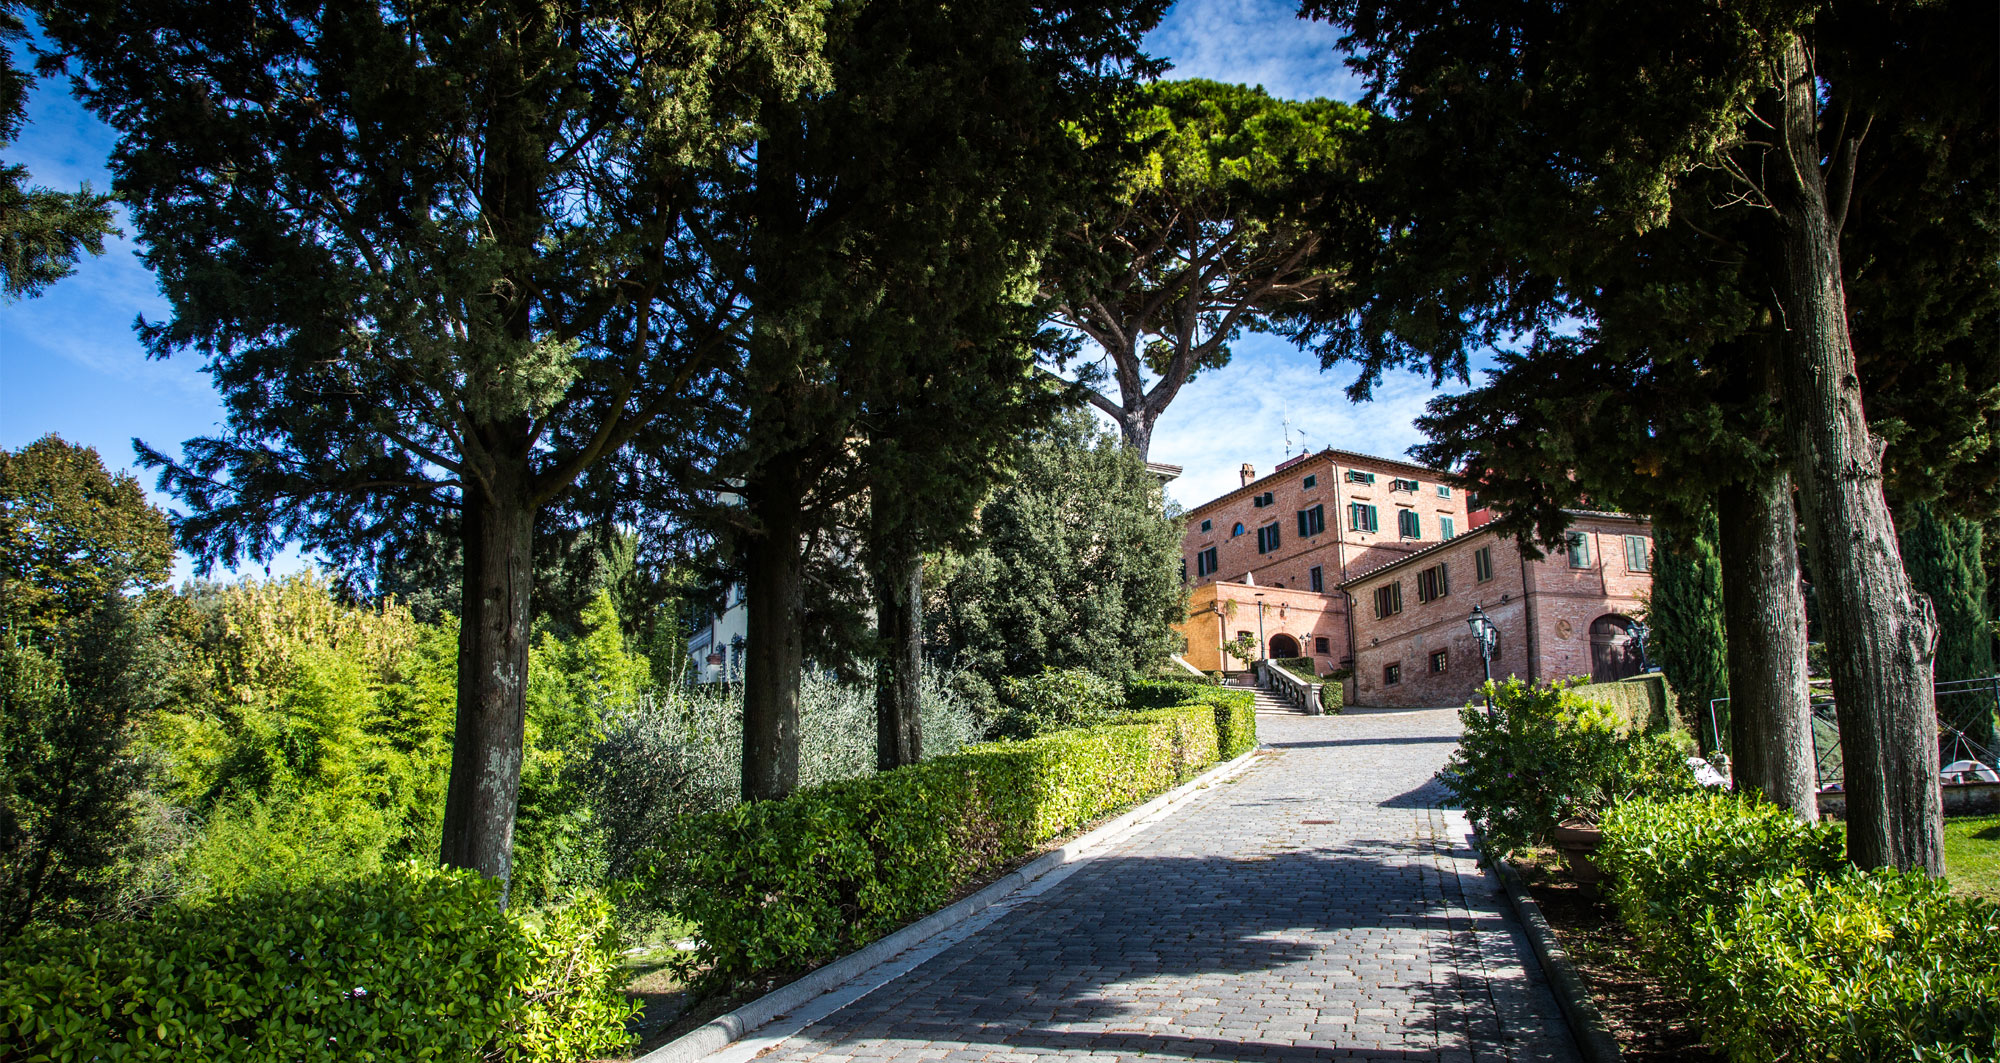 entrance to villa borgo bucciano, holidays and weddings in Tuscany